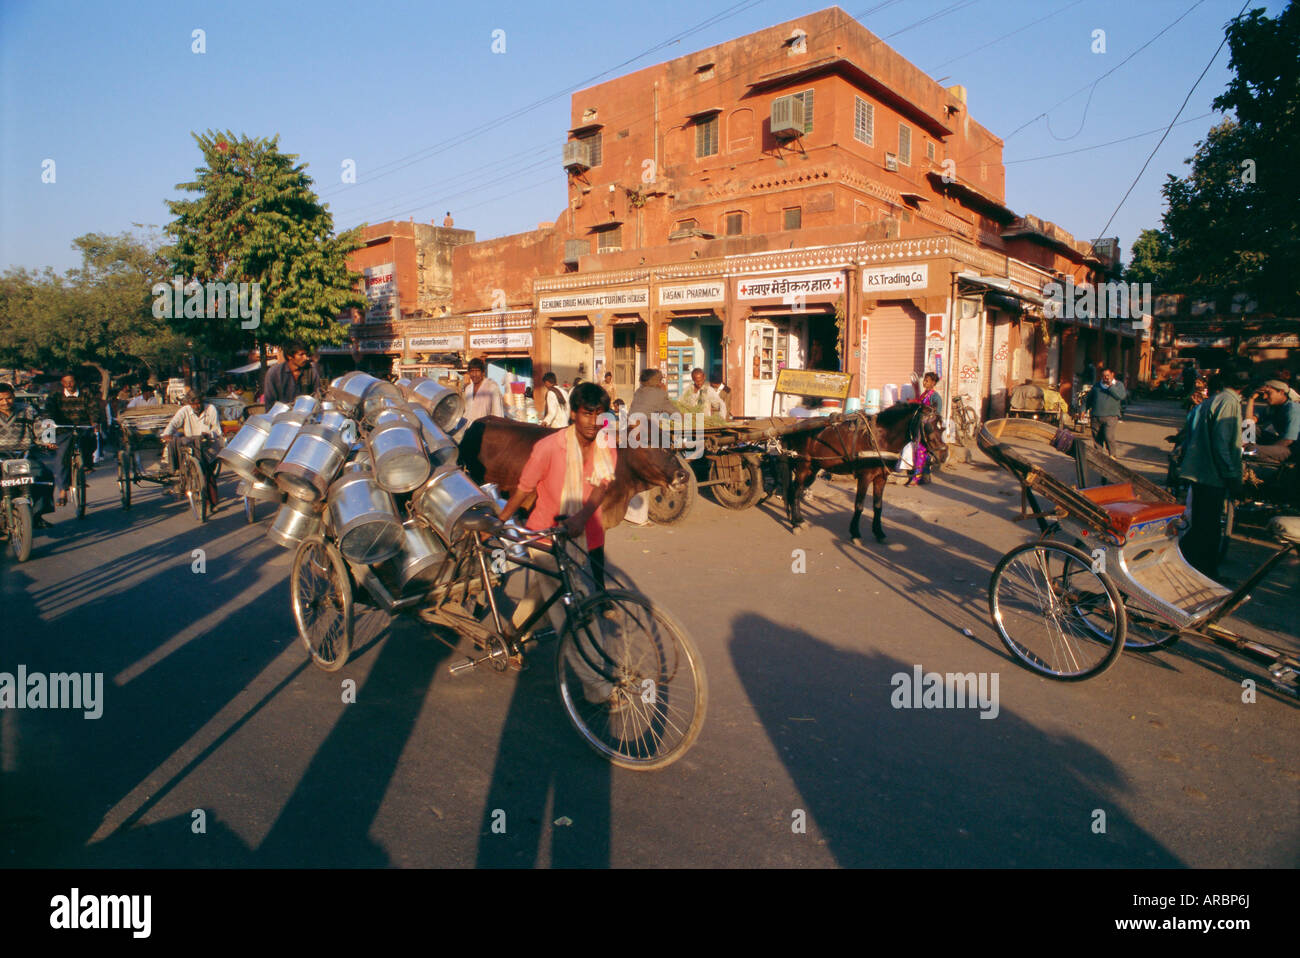 Market area with rickshaws, Jaipur, Rajasthan State, India Stock Photo